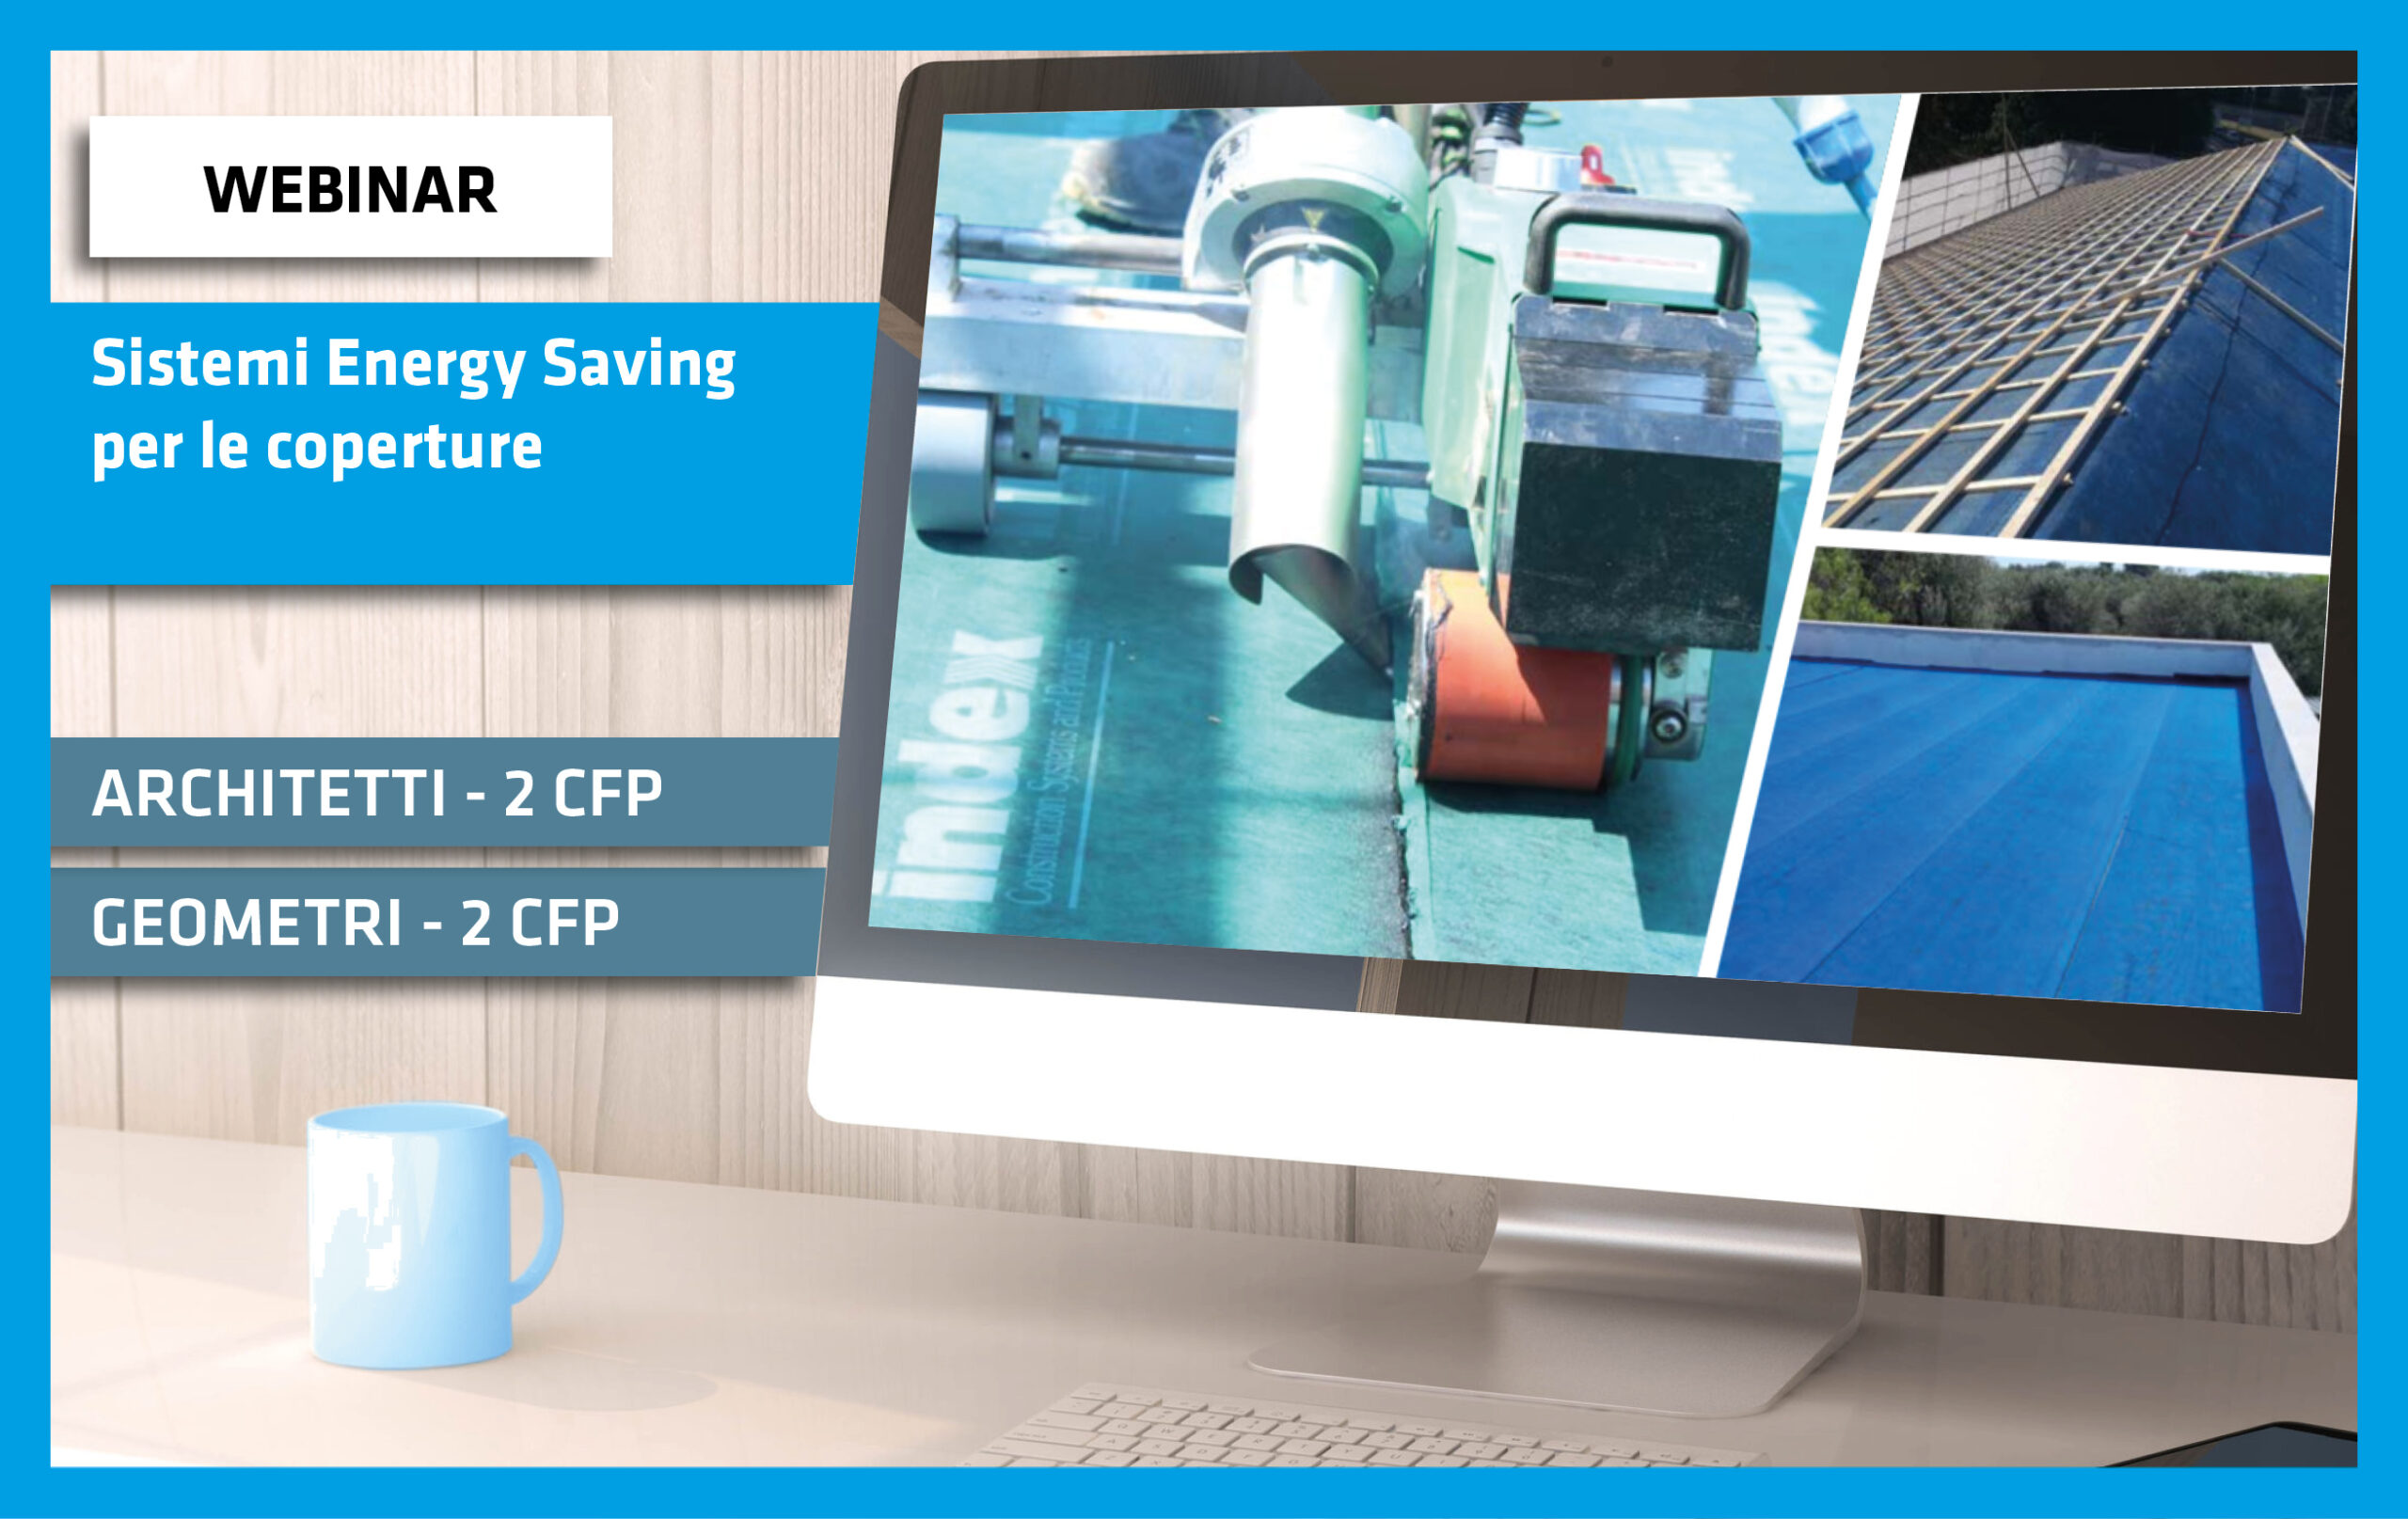 Sistemi energy saving per coperture a ridotto consumo energetico